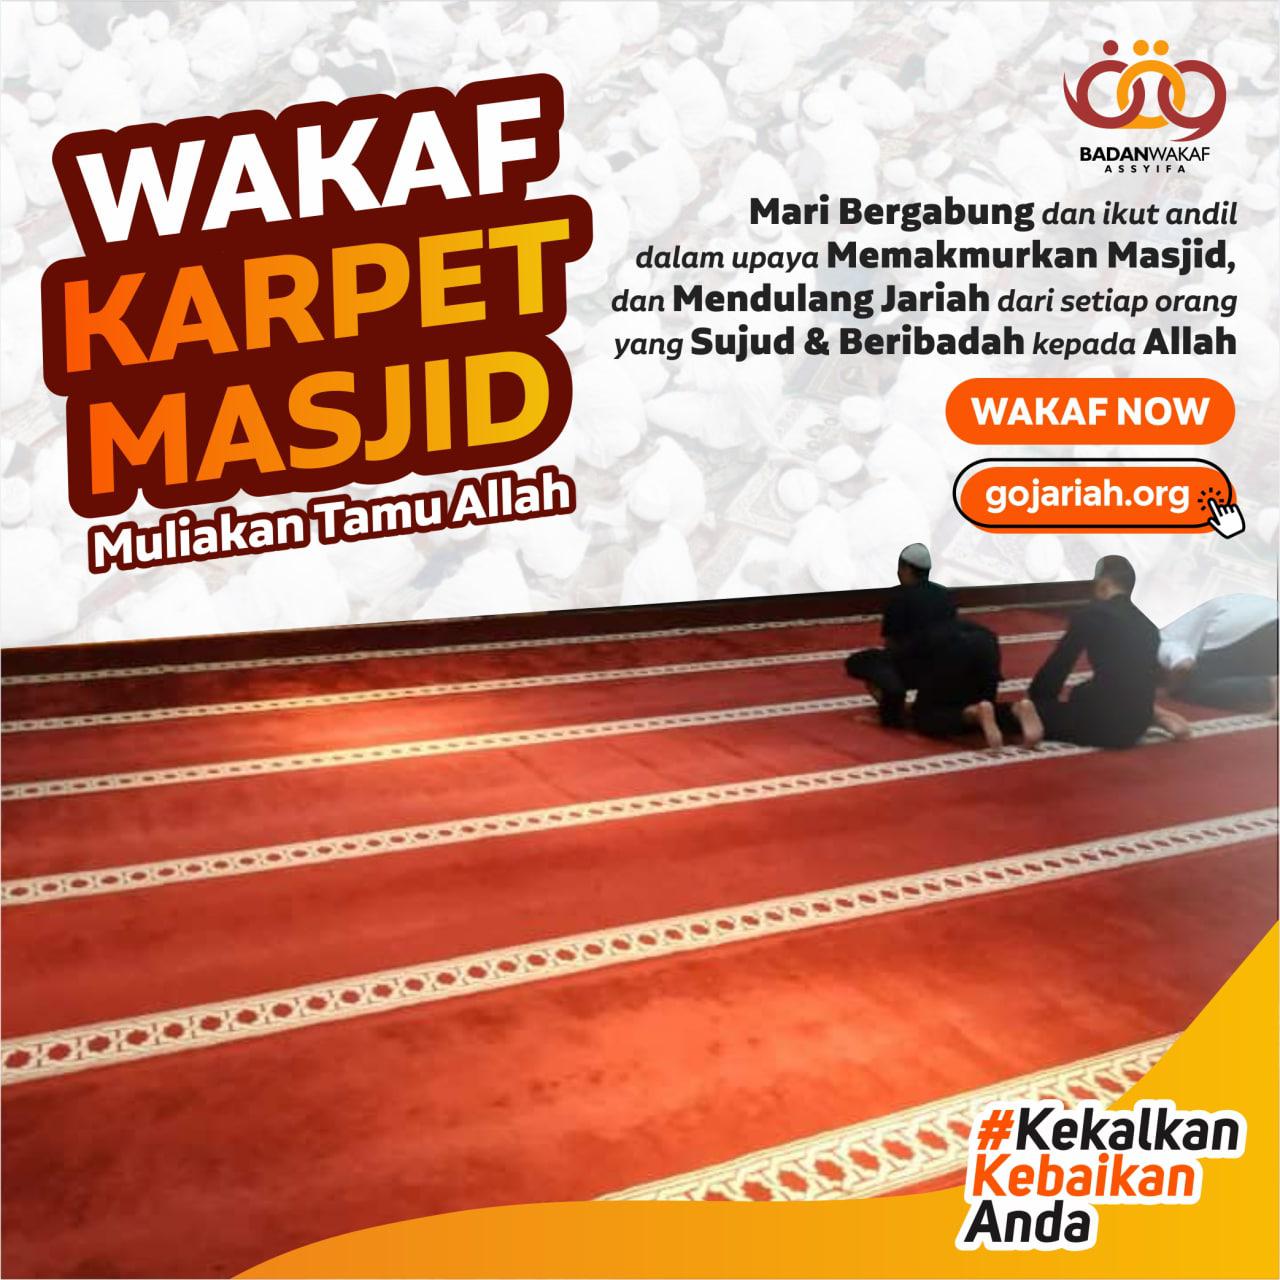 Wakaf Karpet Masjid, Muliakan Tamu Allah